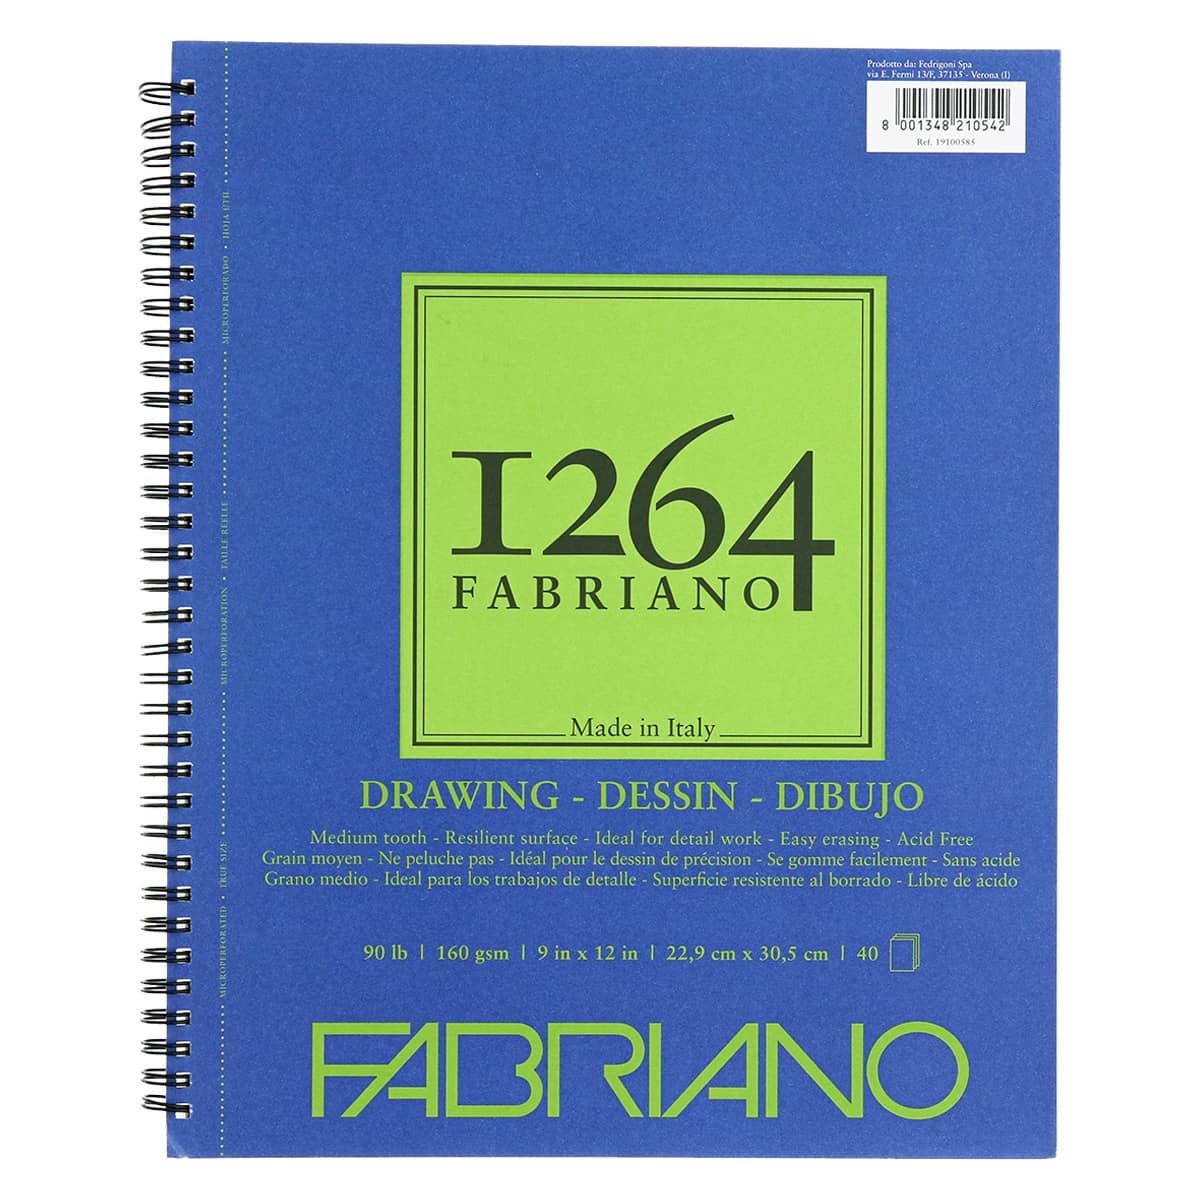 Fabriano 1264 Drawing Spiral Pad - 9"x12", 90lb (40-Sheet)